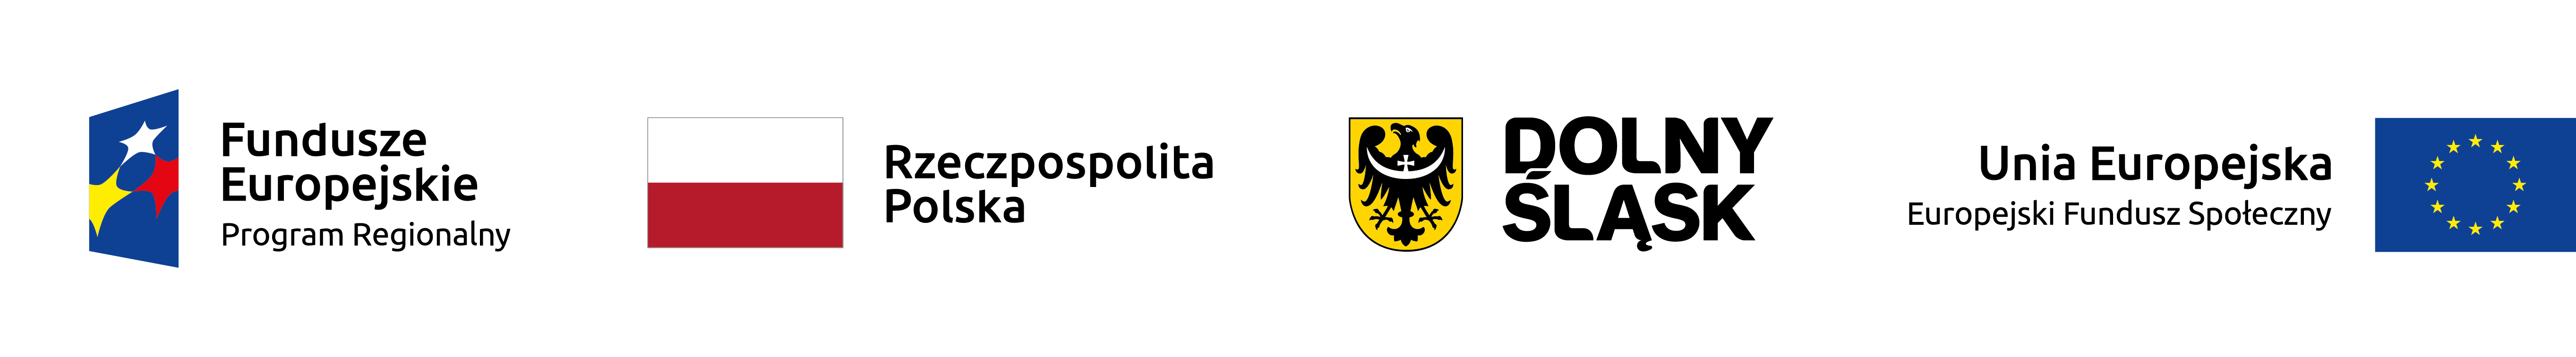 zestaw: znak Funduszy Europejskich, barwy RP, logo Dolnego Śląska, znak Unii Europejskiej